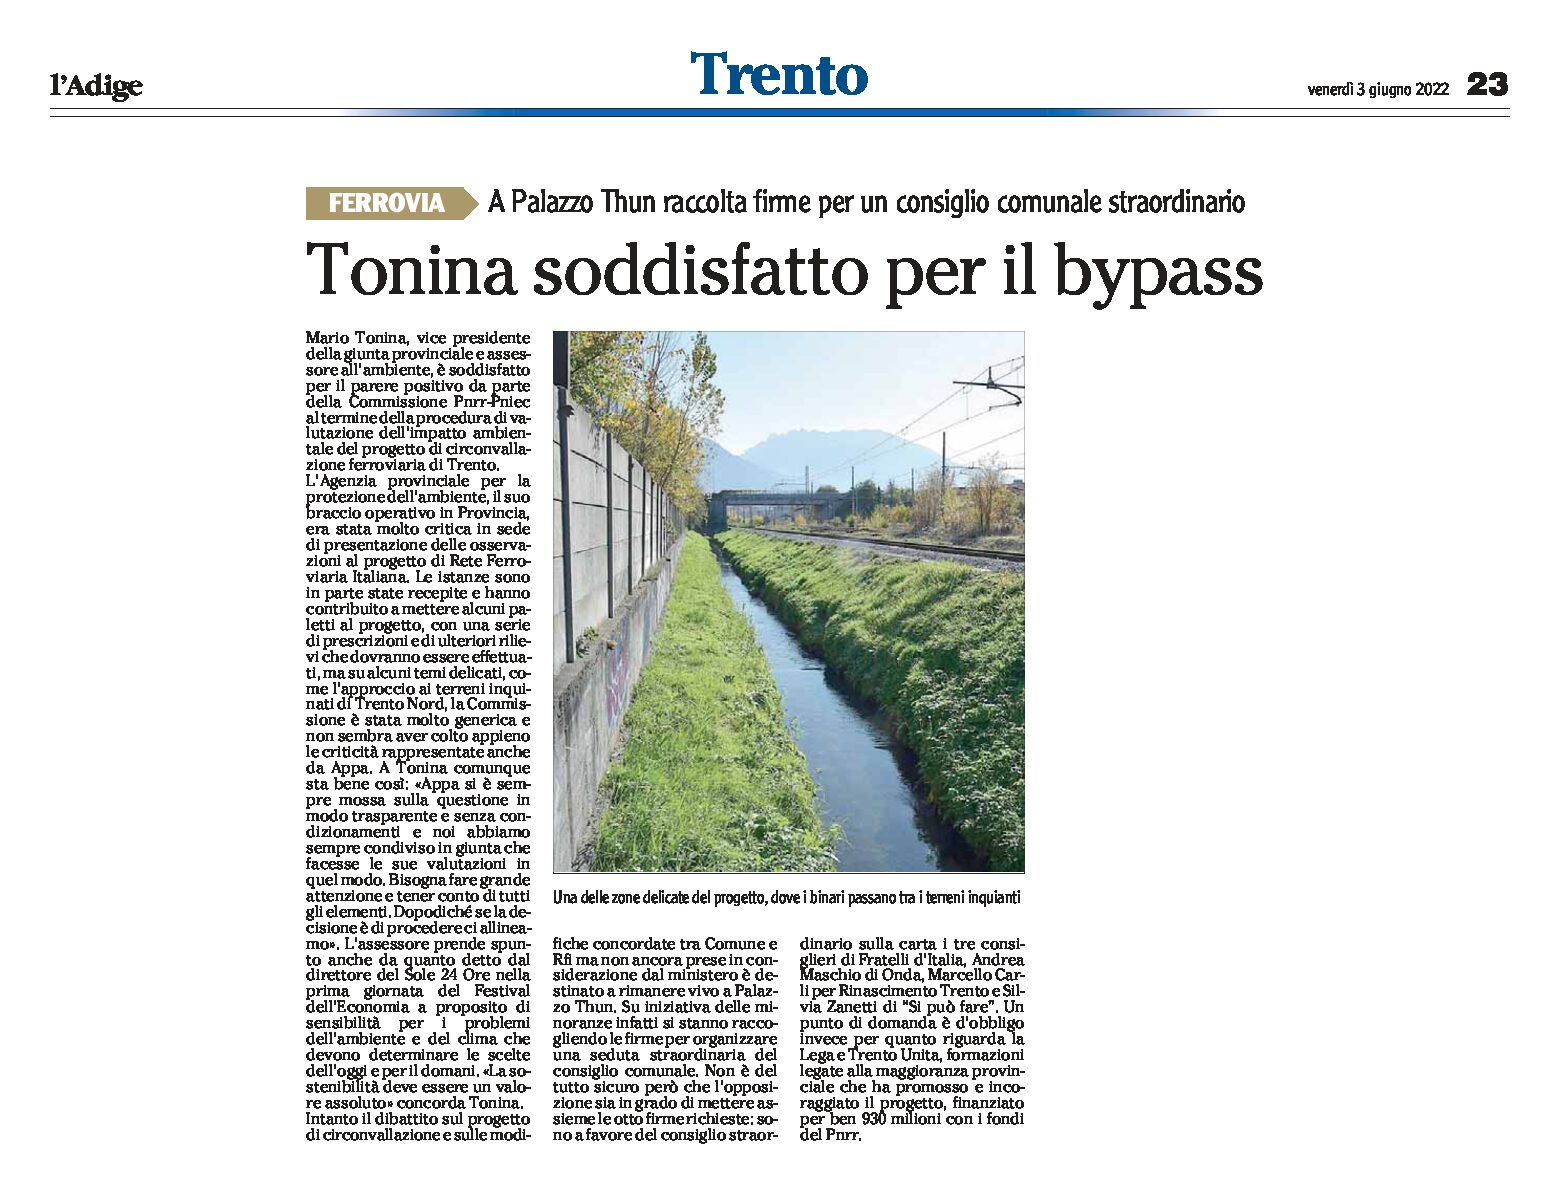 Trento, bypass: Tonina soddisfatto